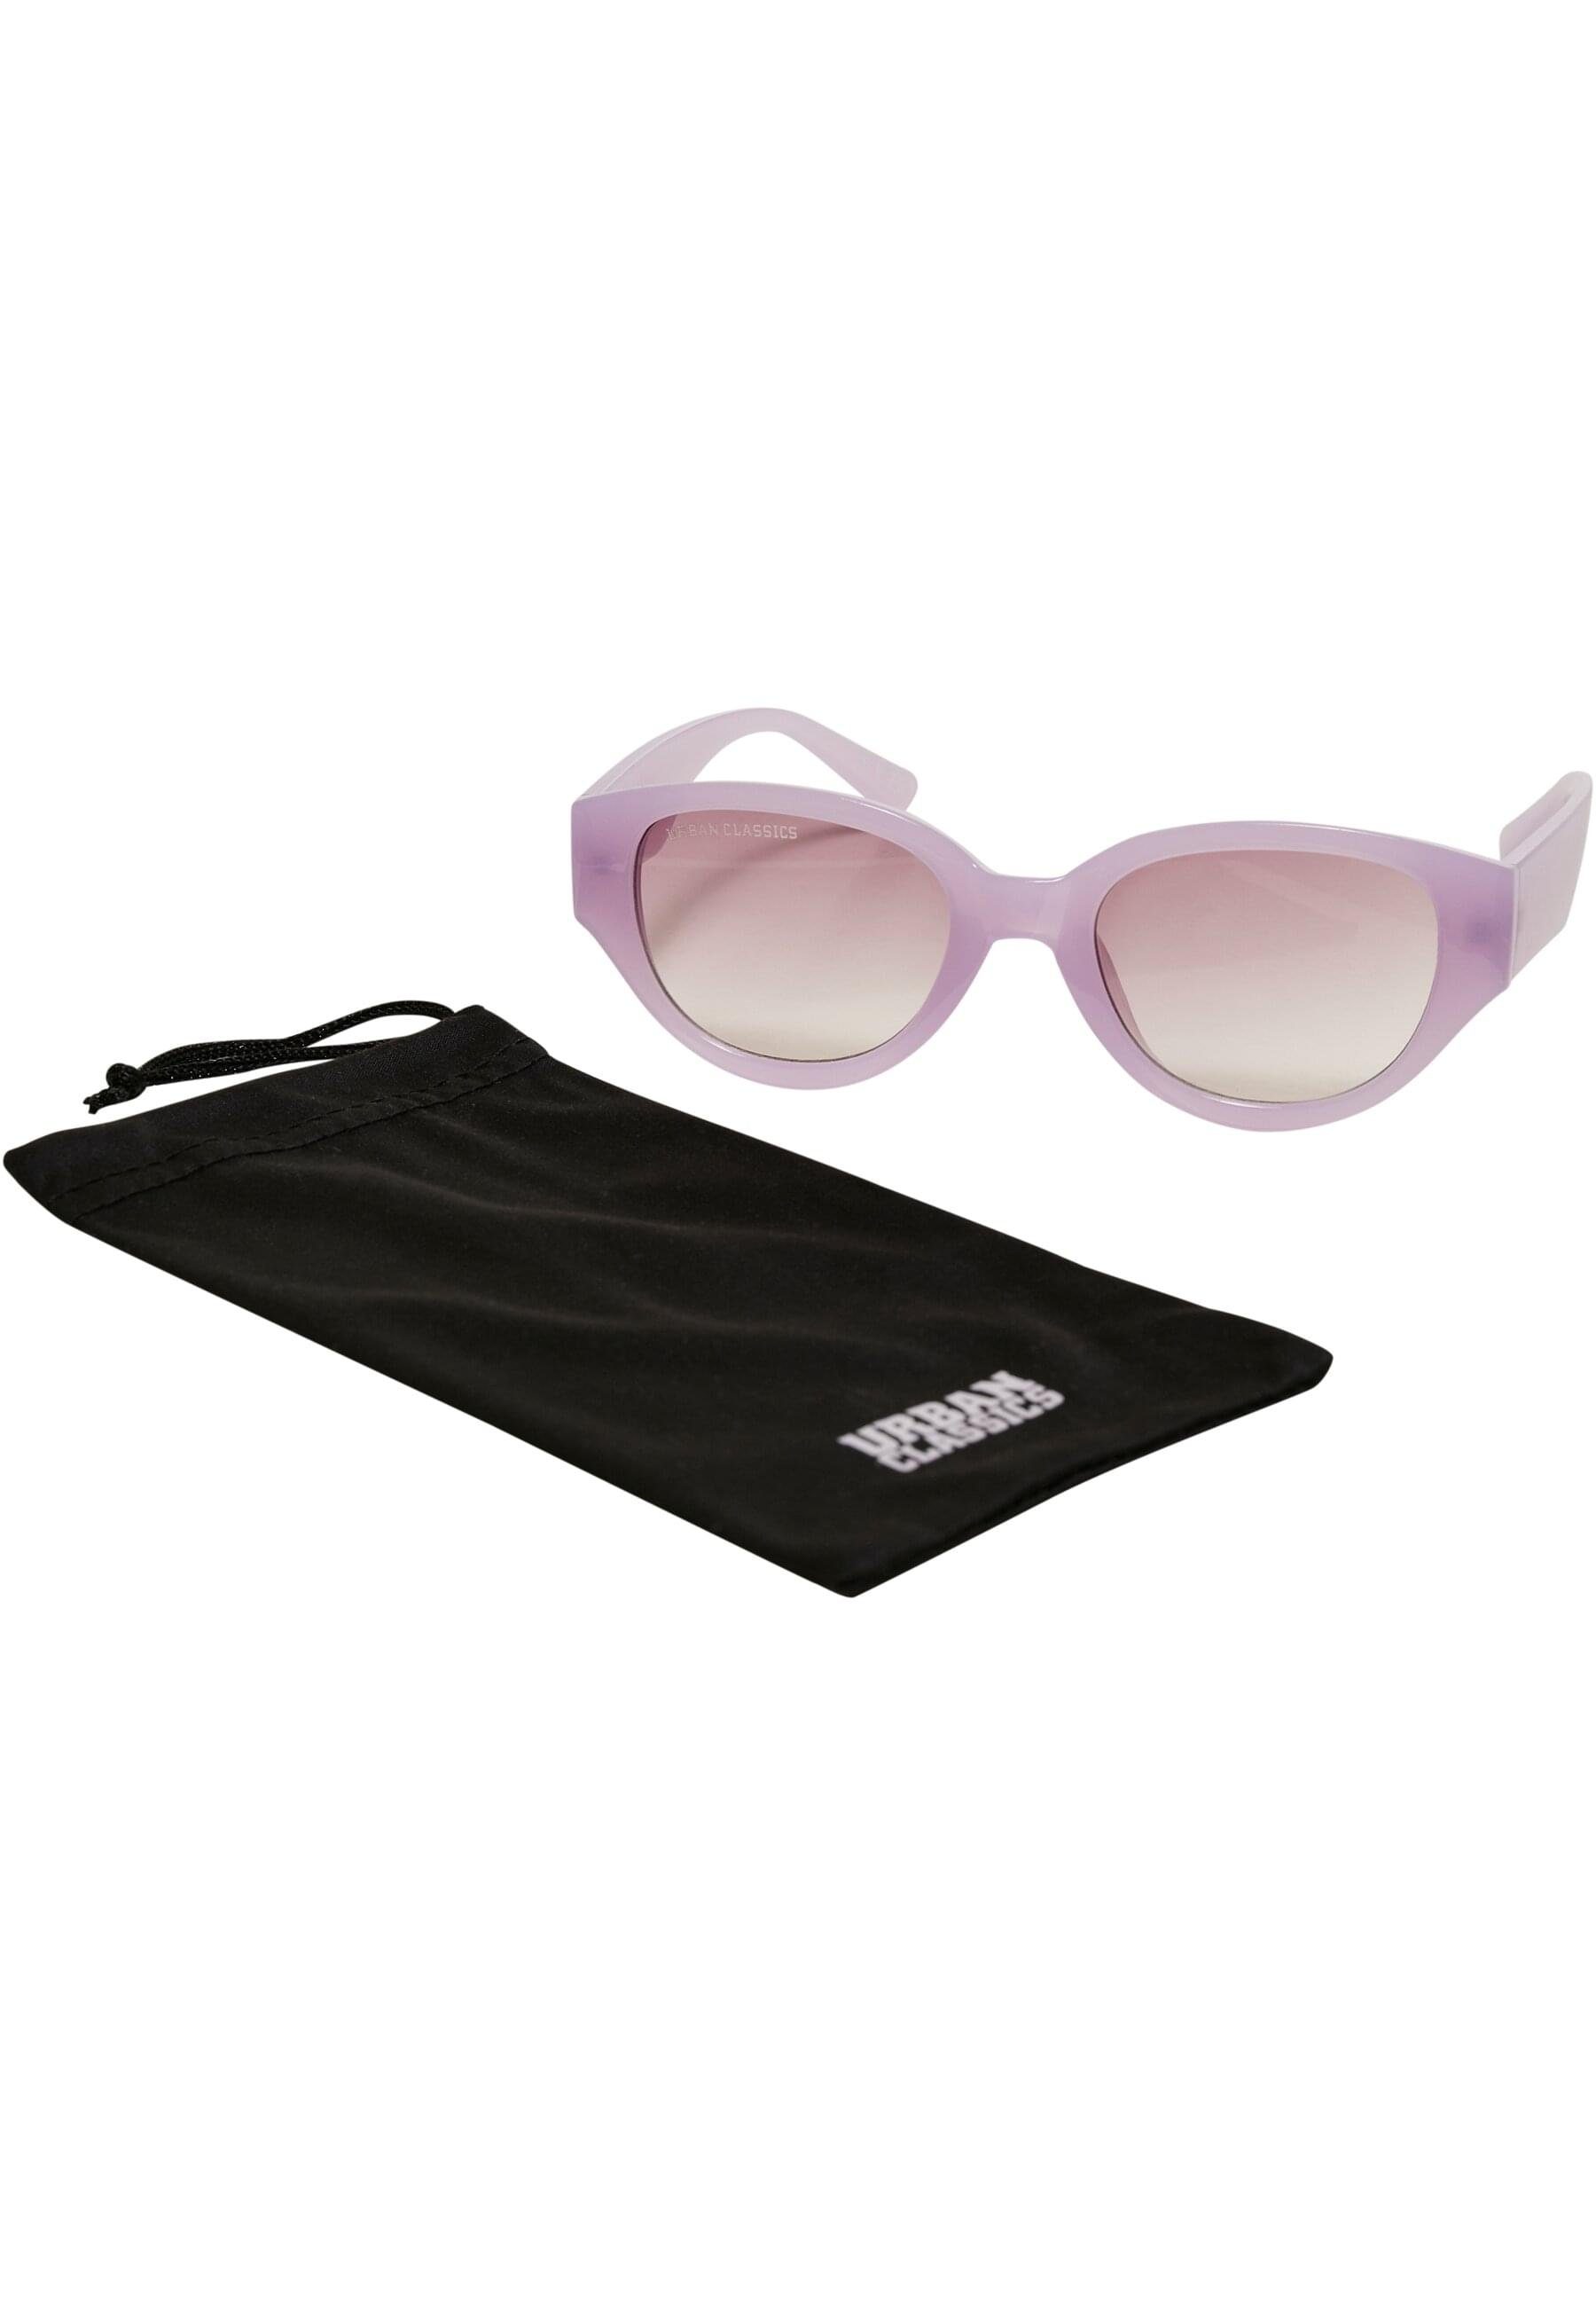 Cruz CLASSICS Santa URBAN softlilac Sunglasses Unisex Sonnenbrille